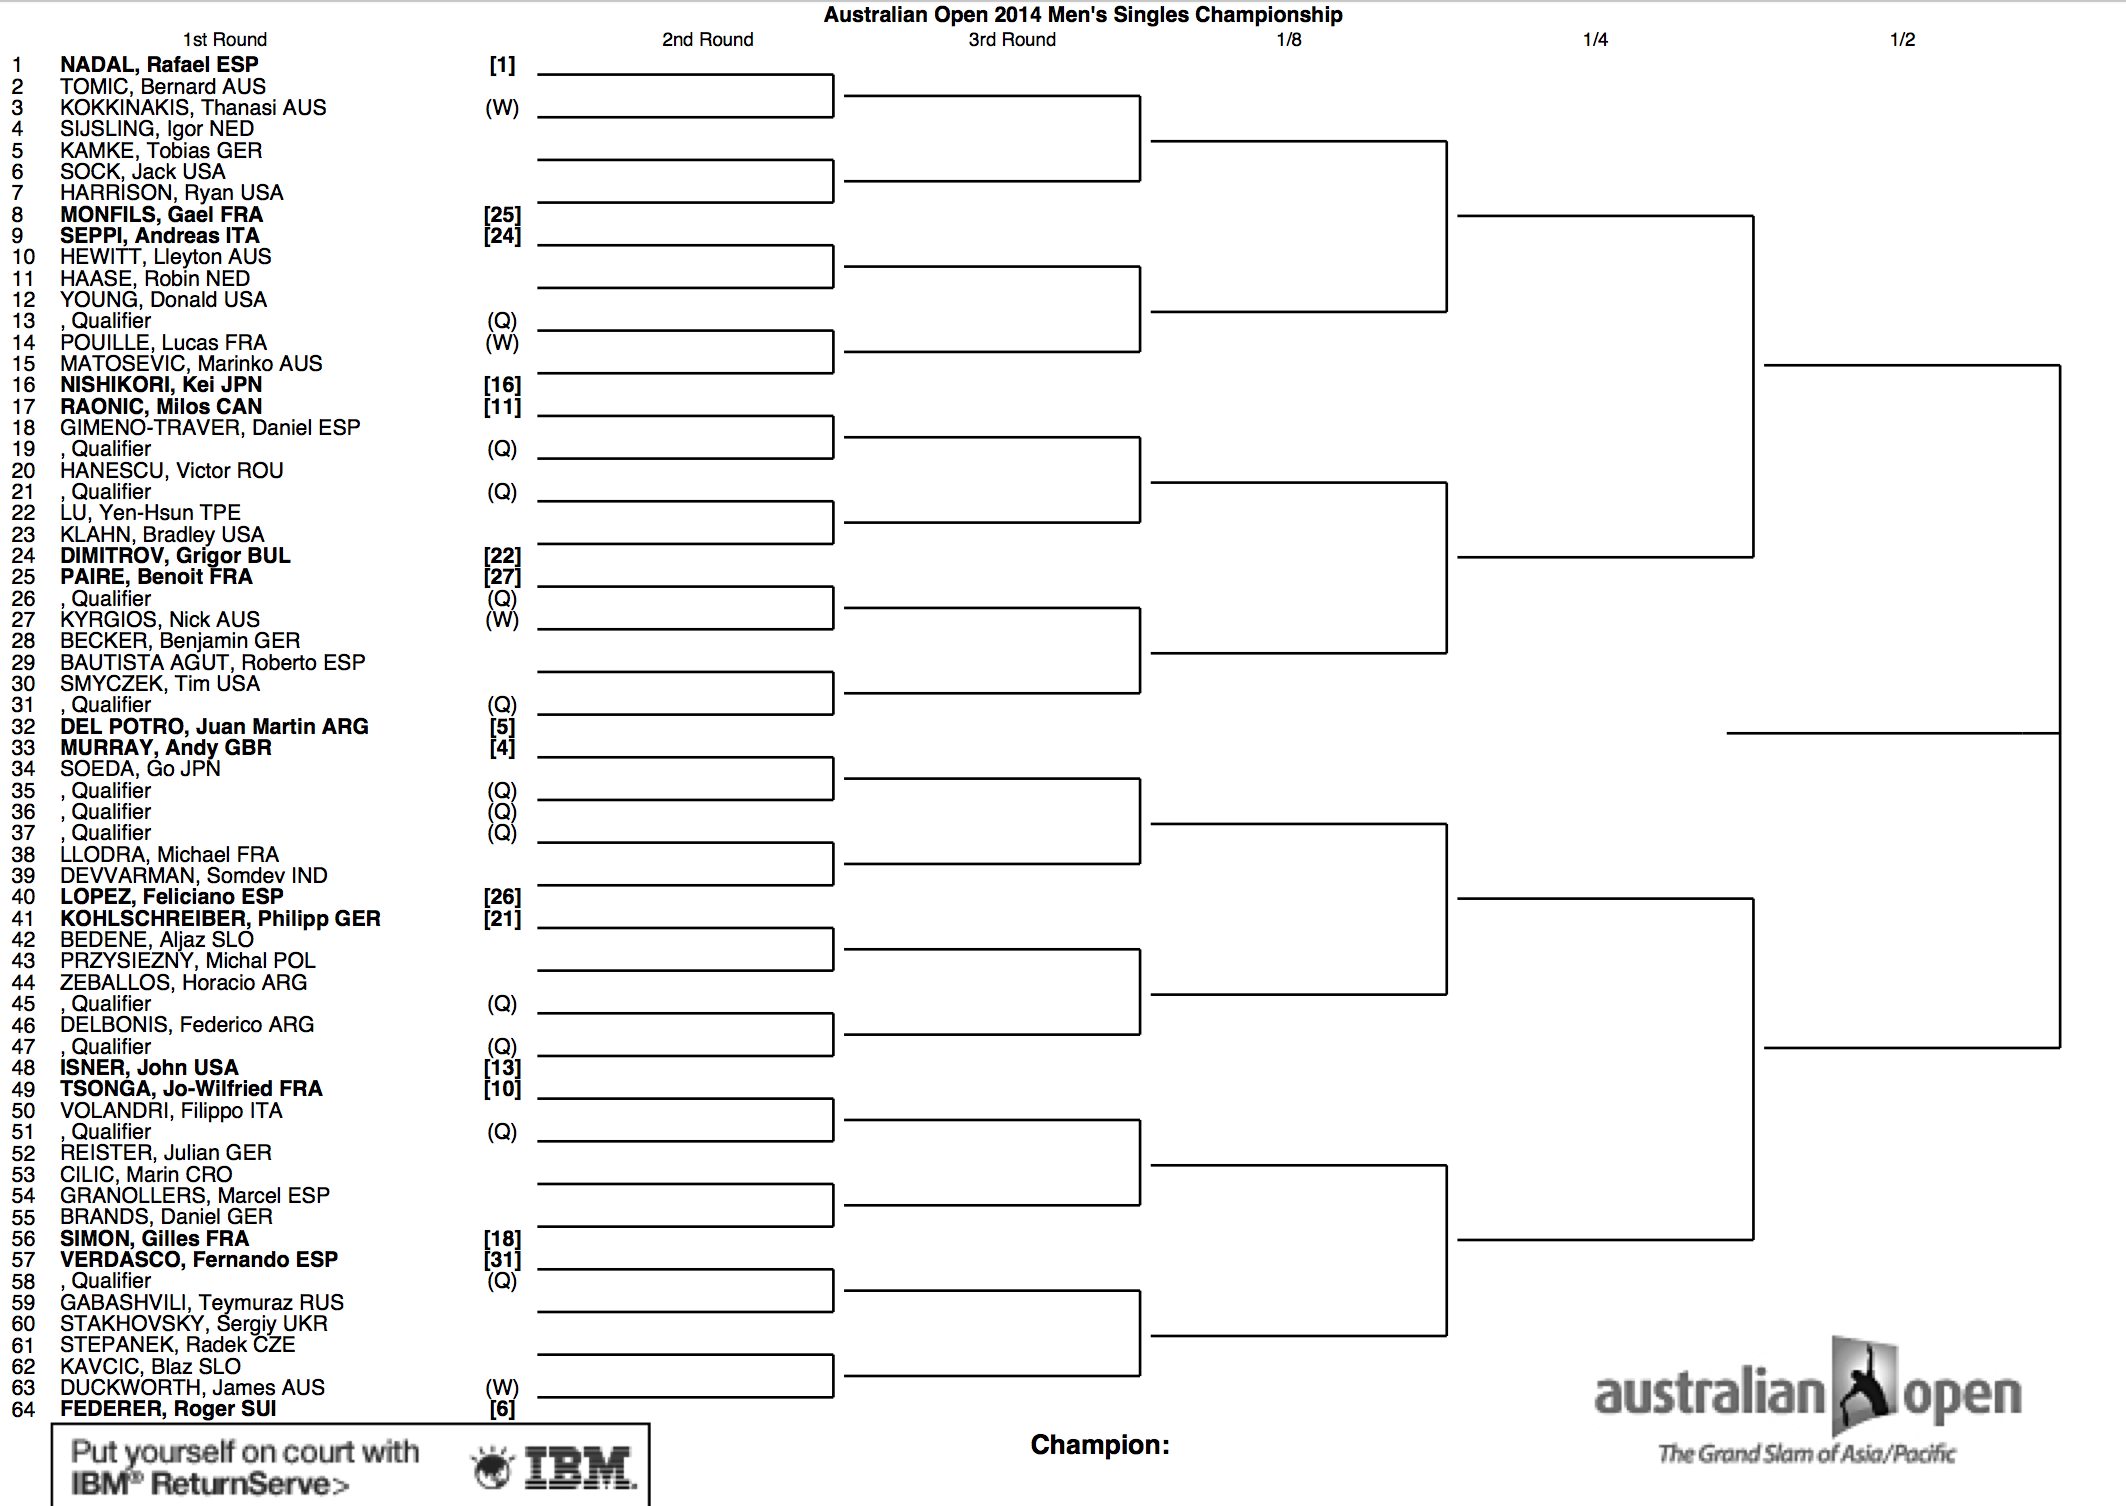 2014 Australian Open Draw